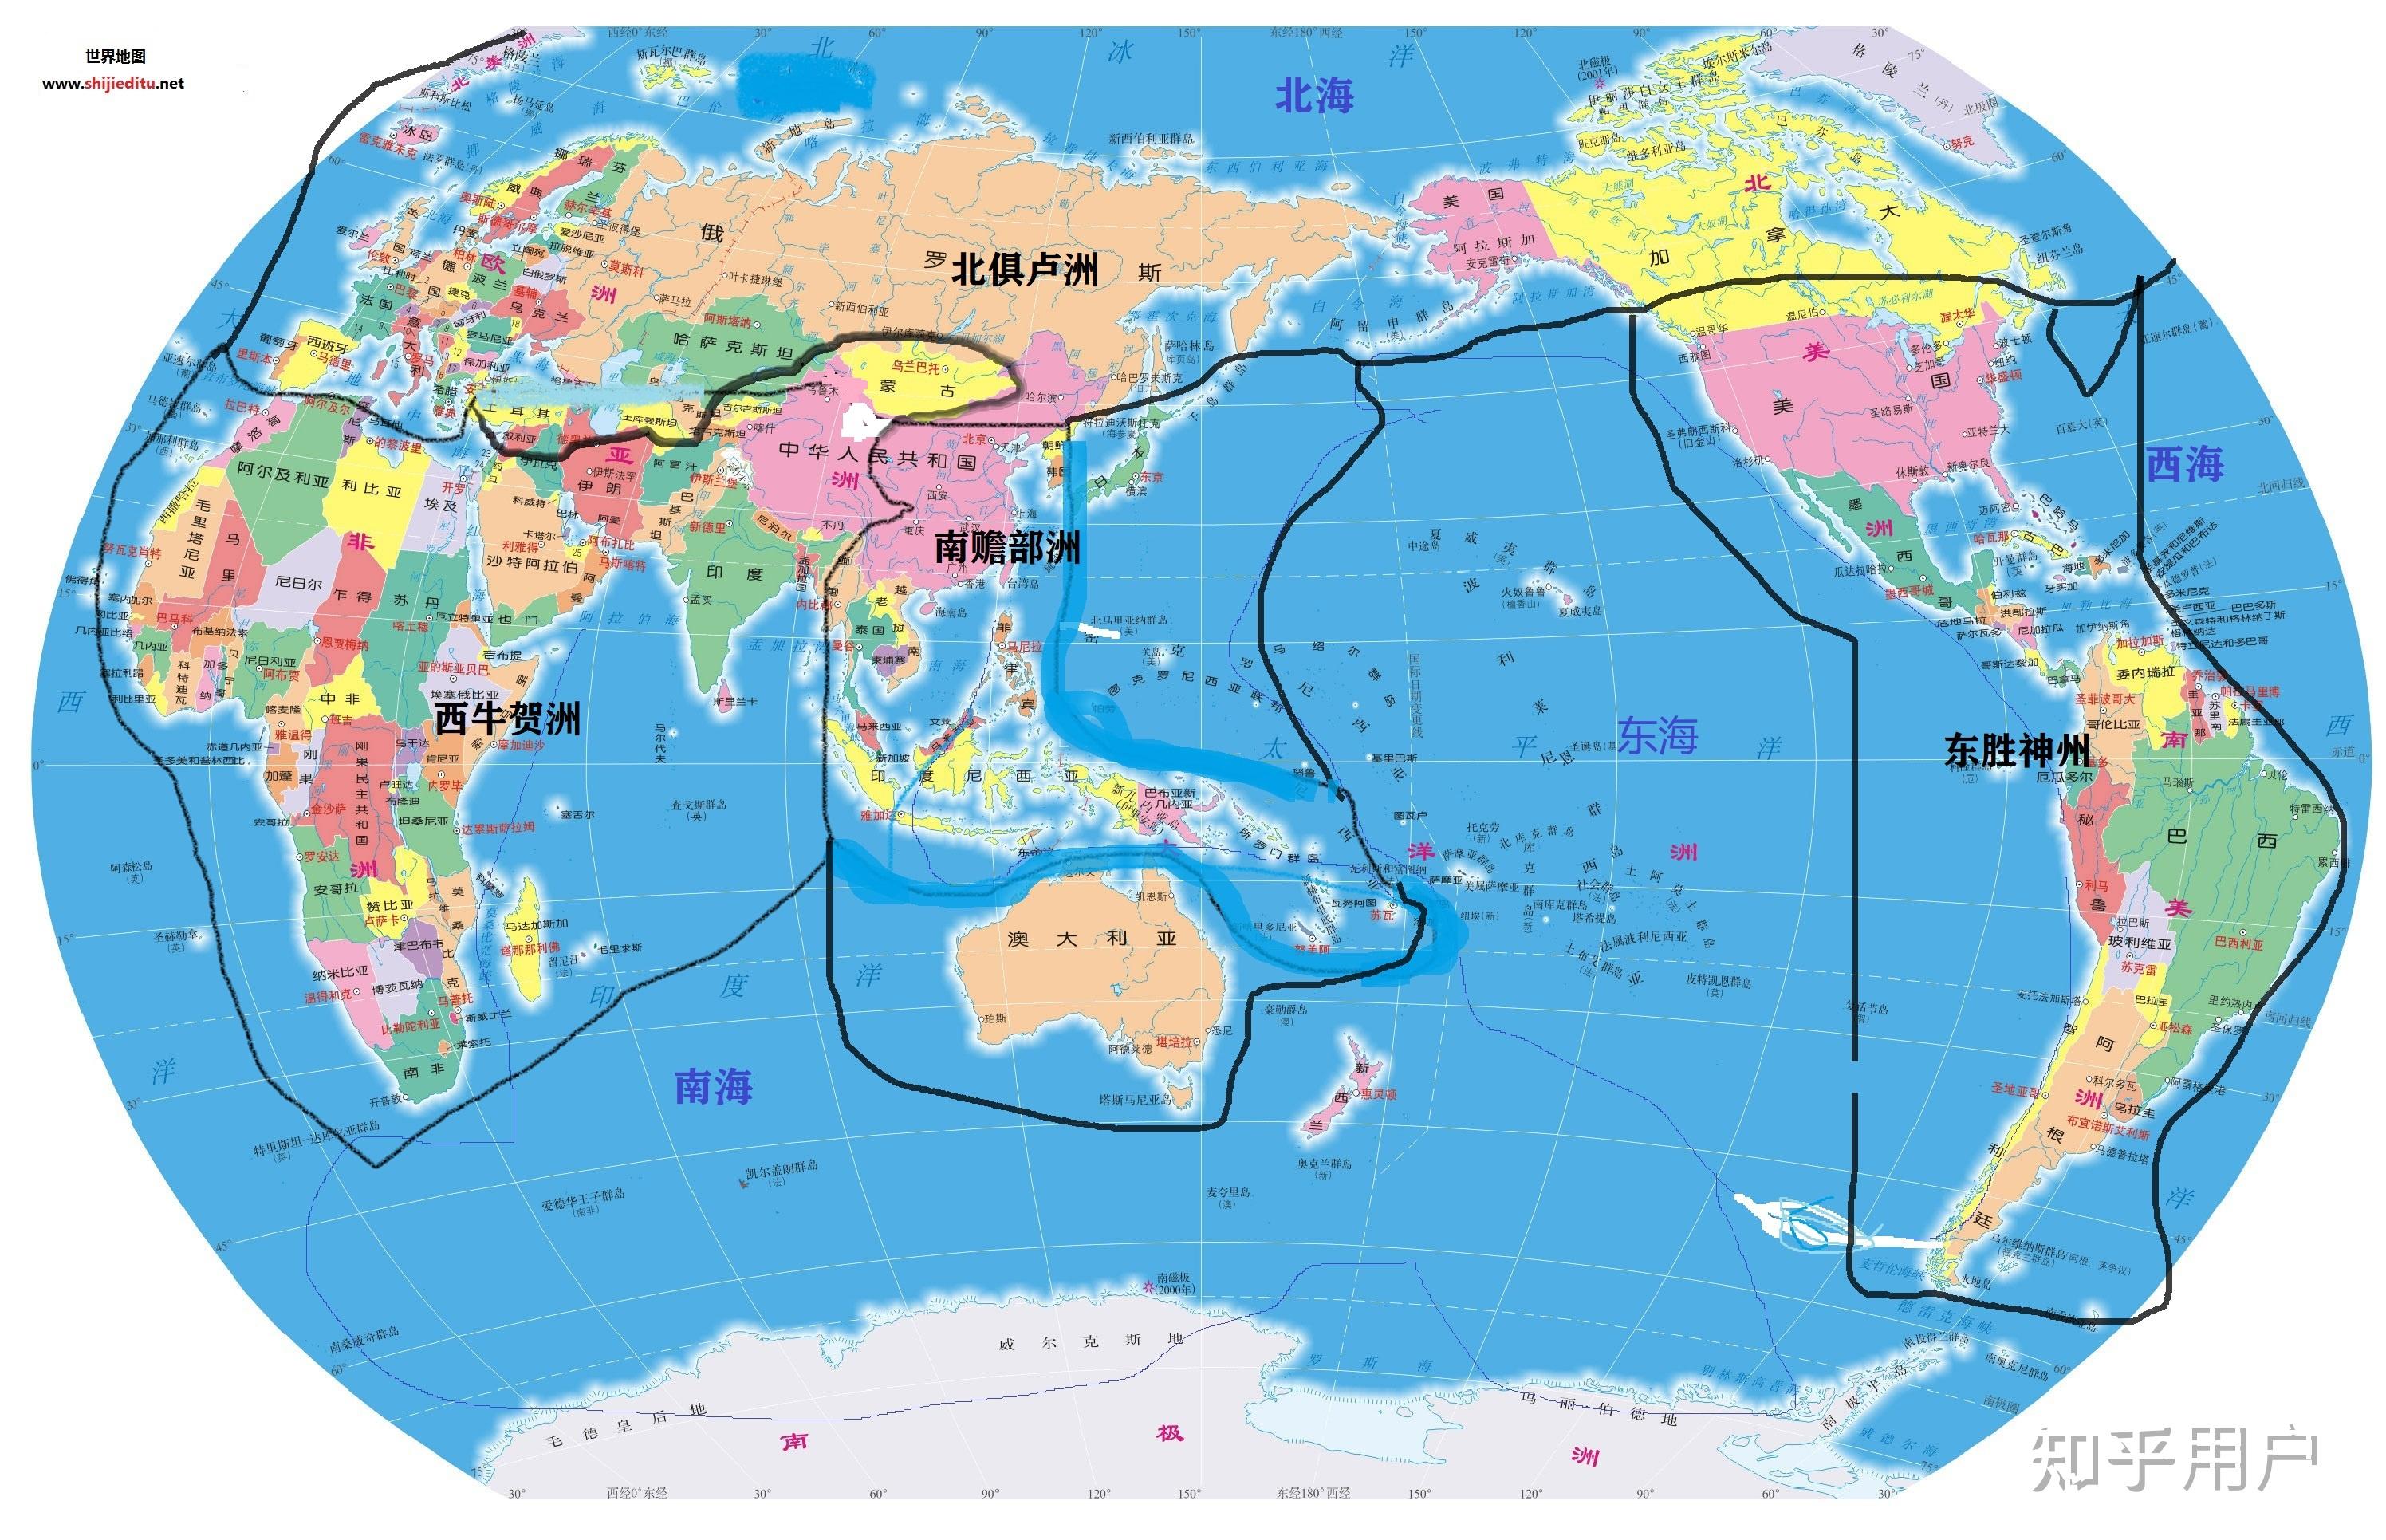 哪位来分析一下西游记世界的地图